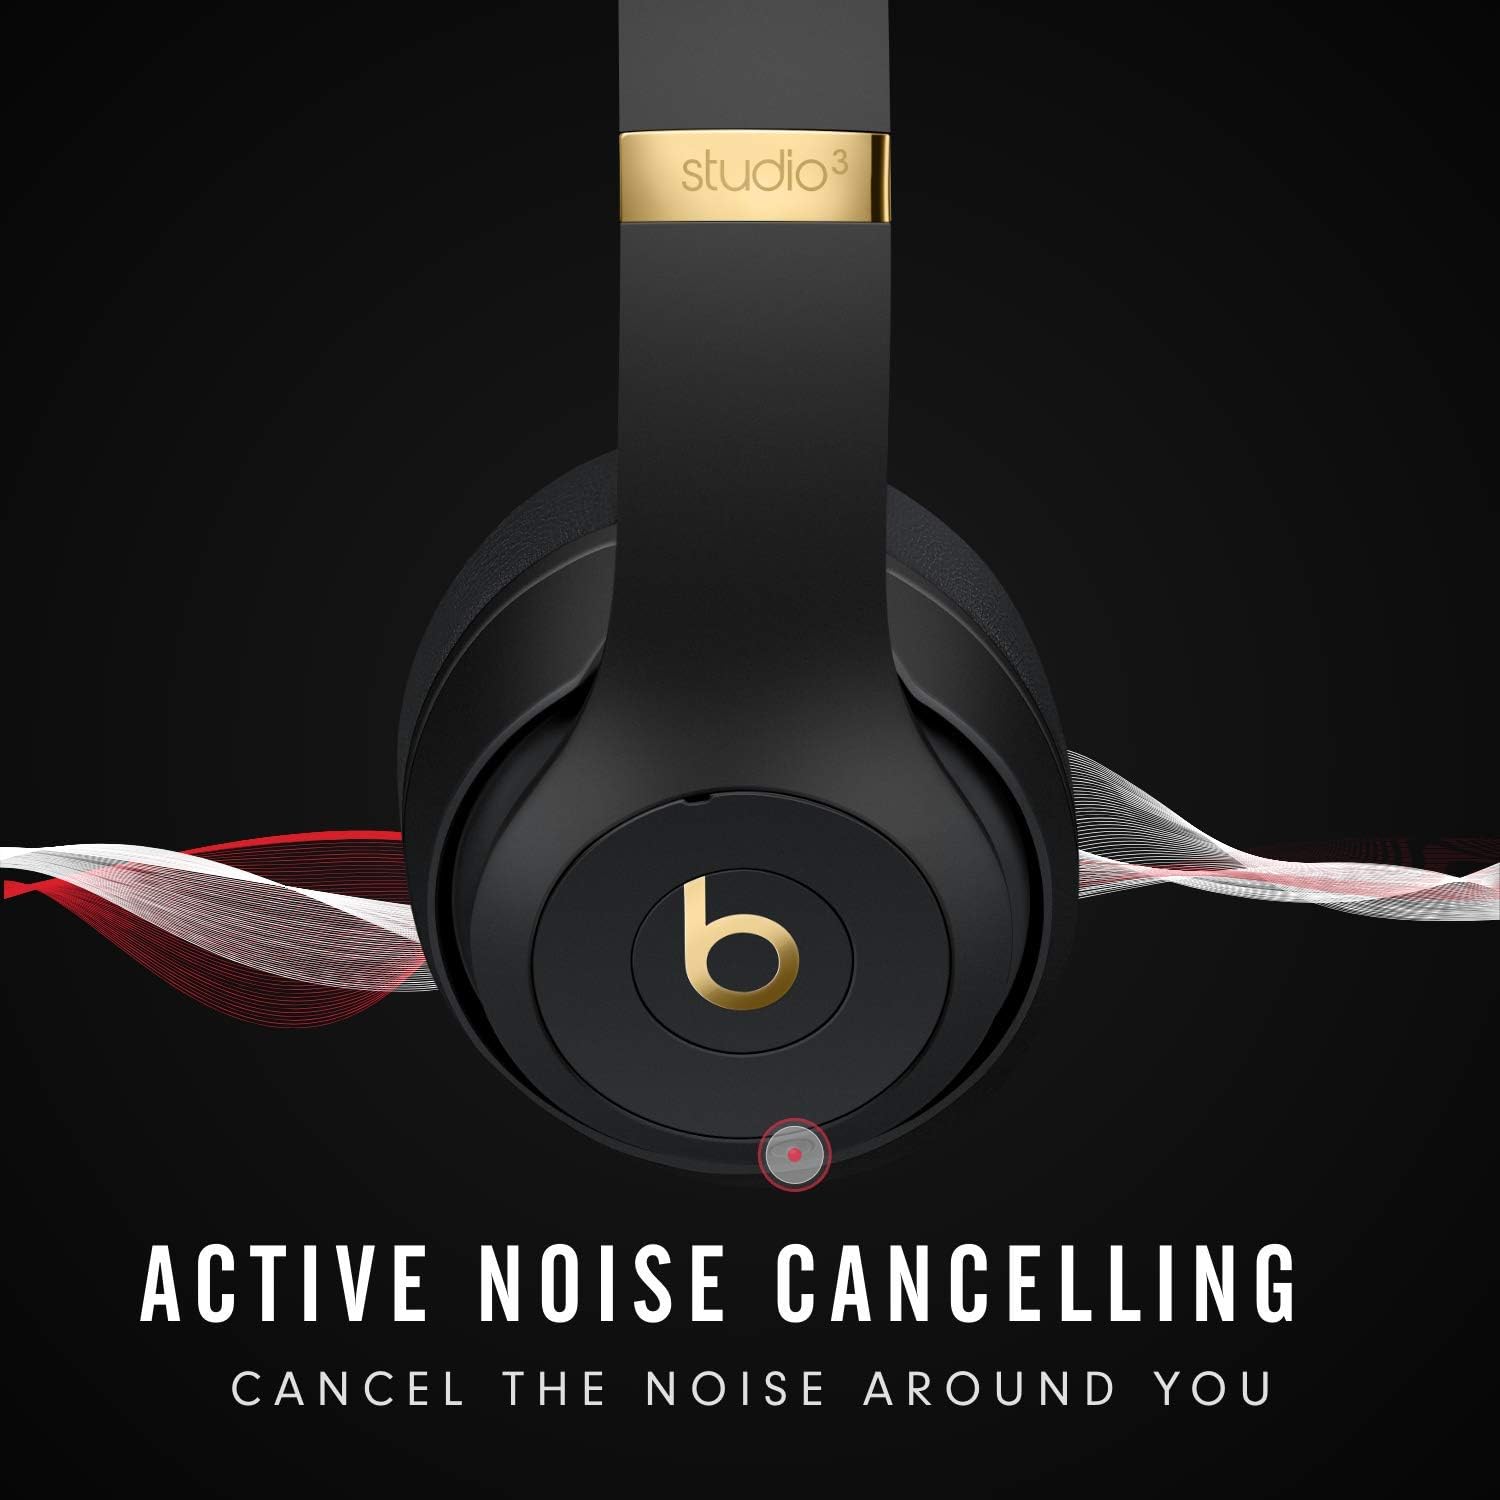 Beats Studio3 Wireless Over‑Ear Headphones Red